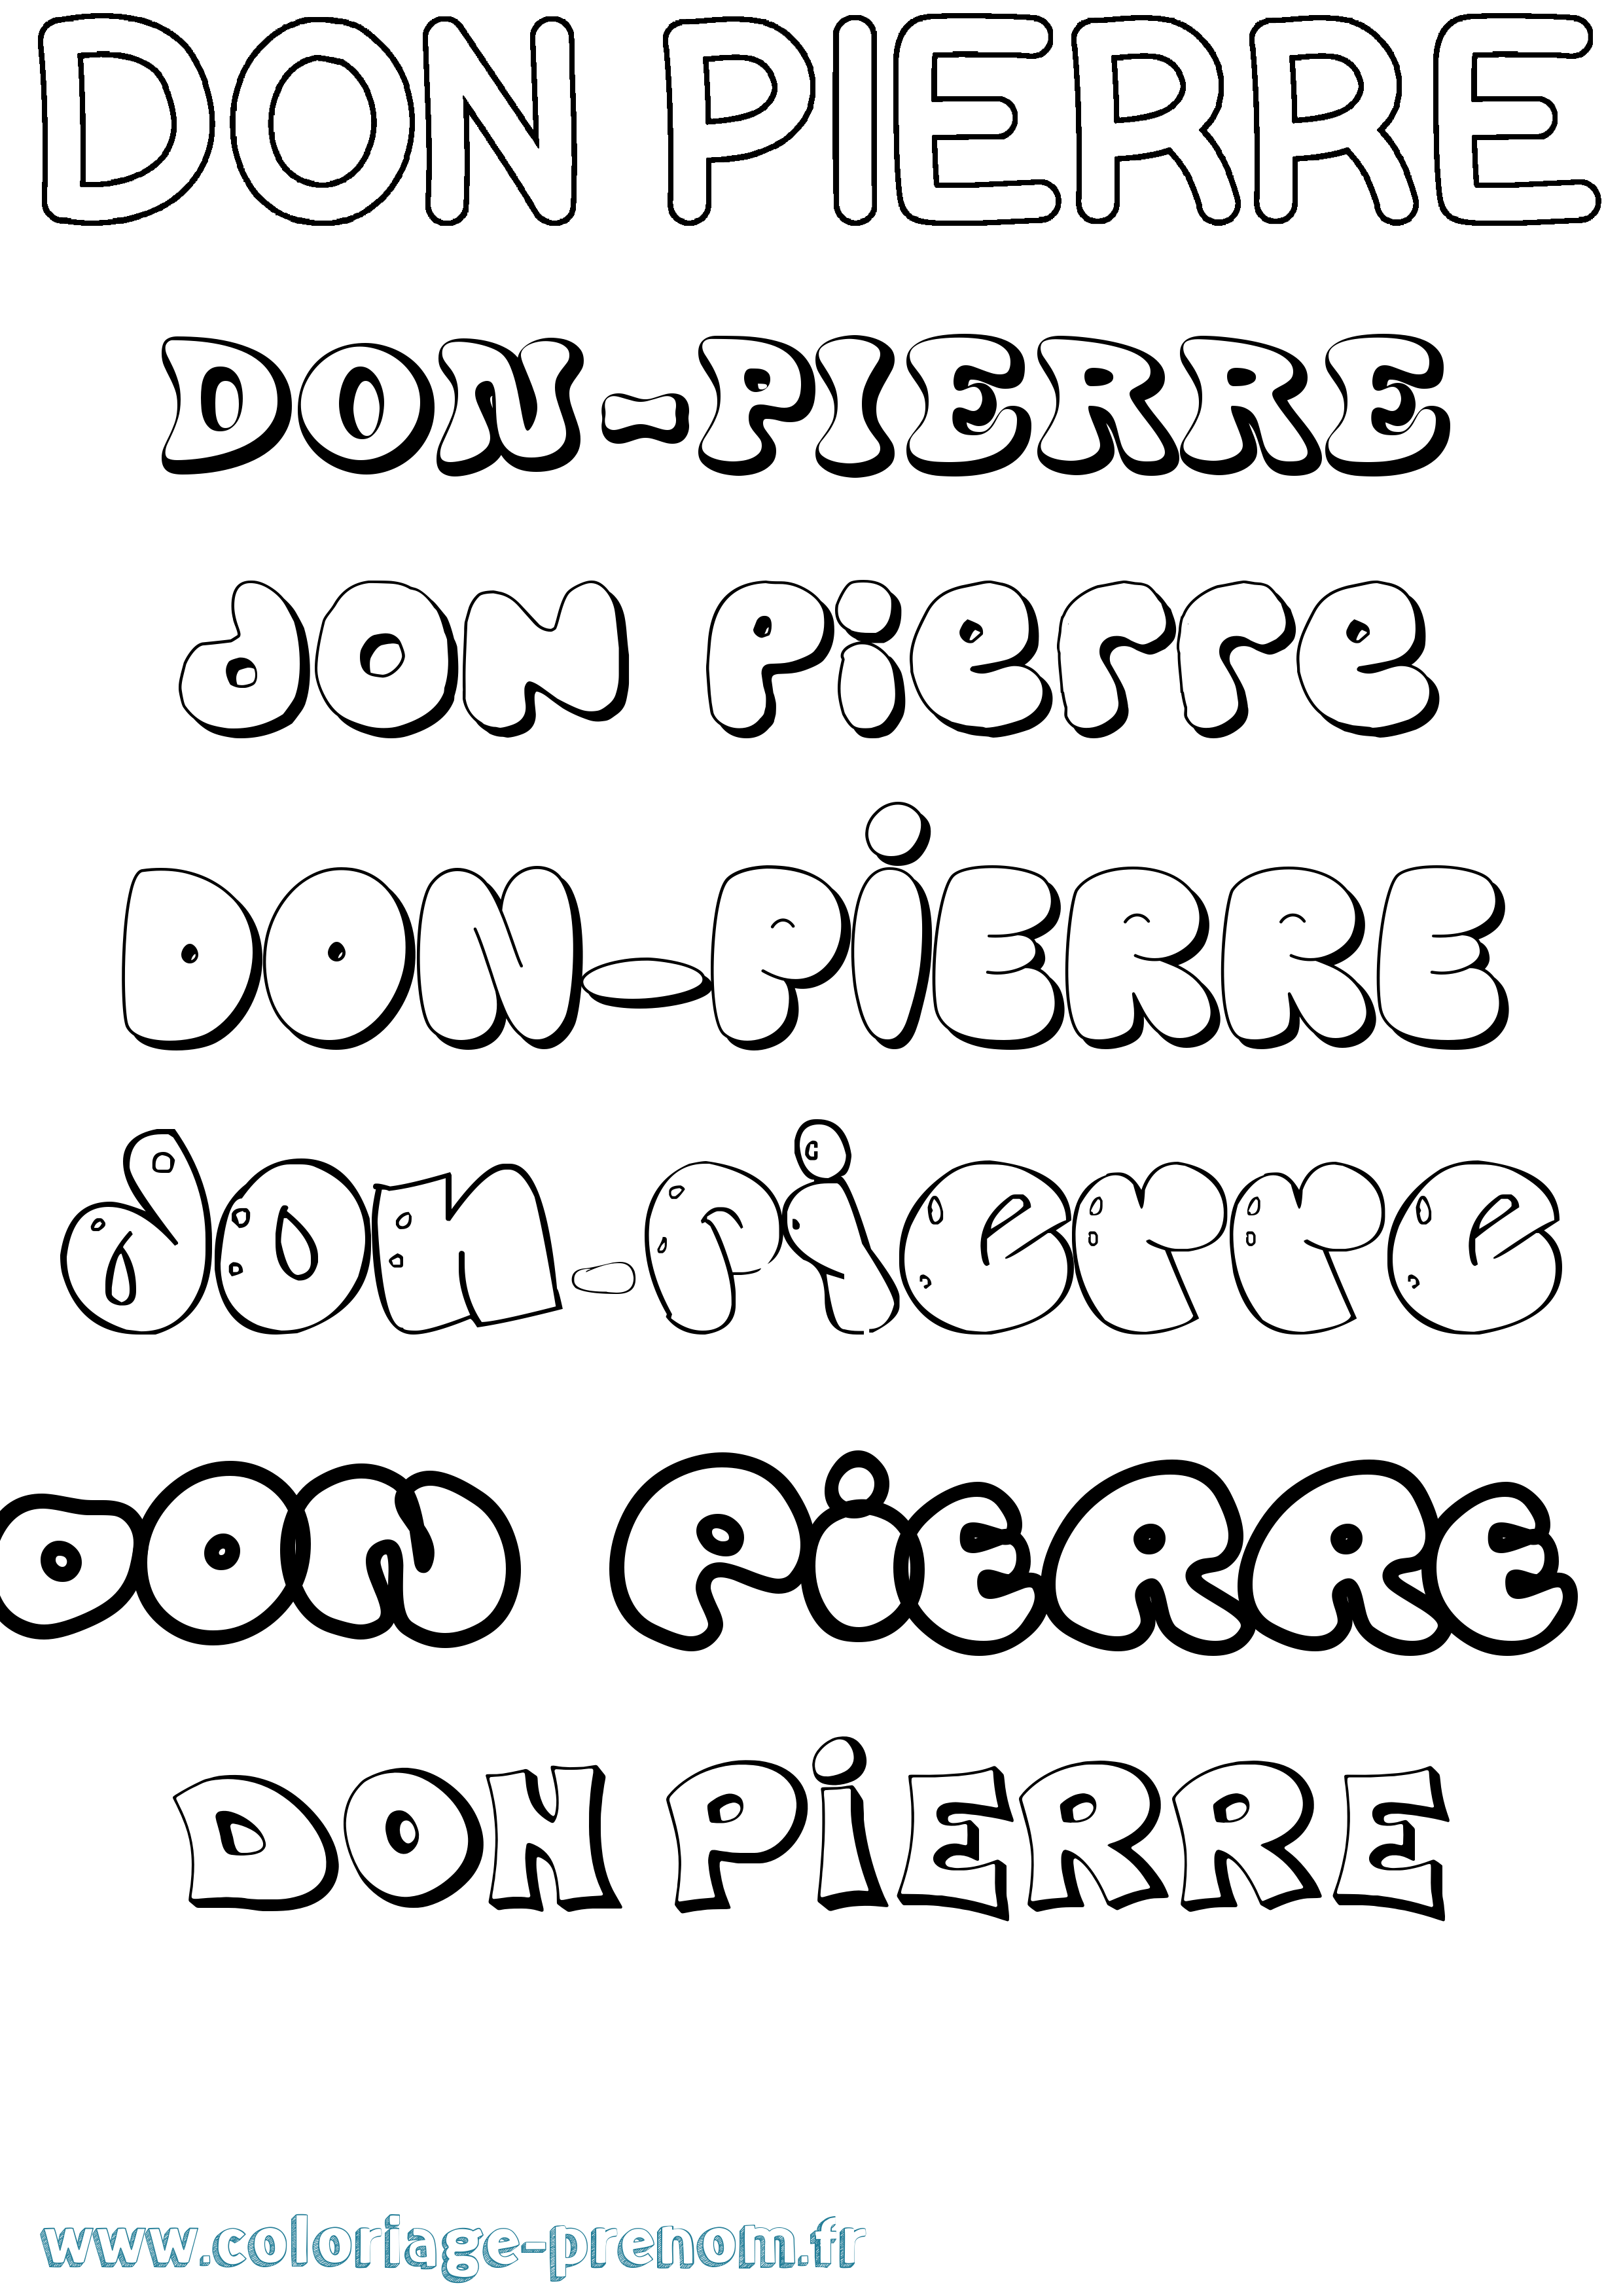 Coloriage prénom Don-Pierre Bubble